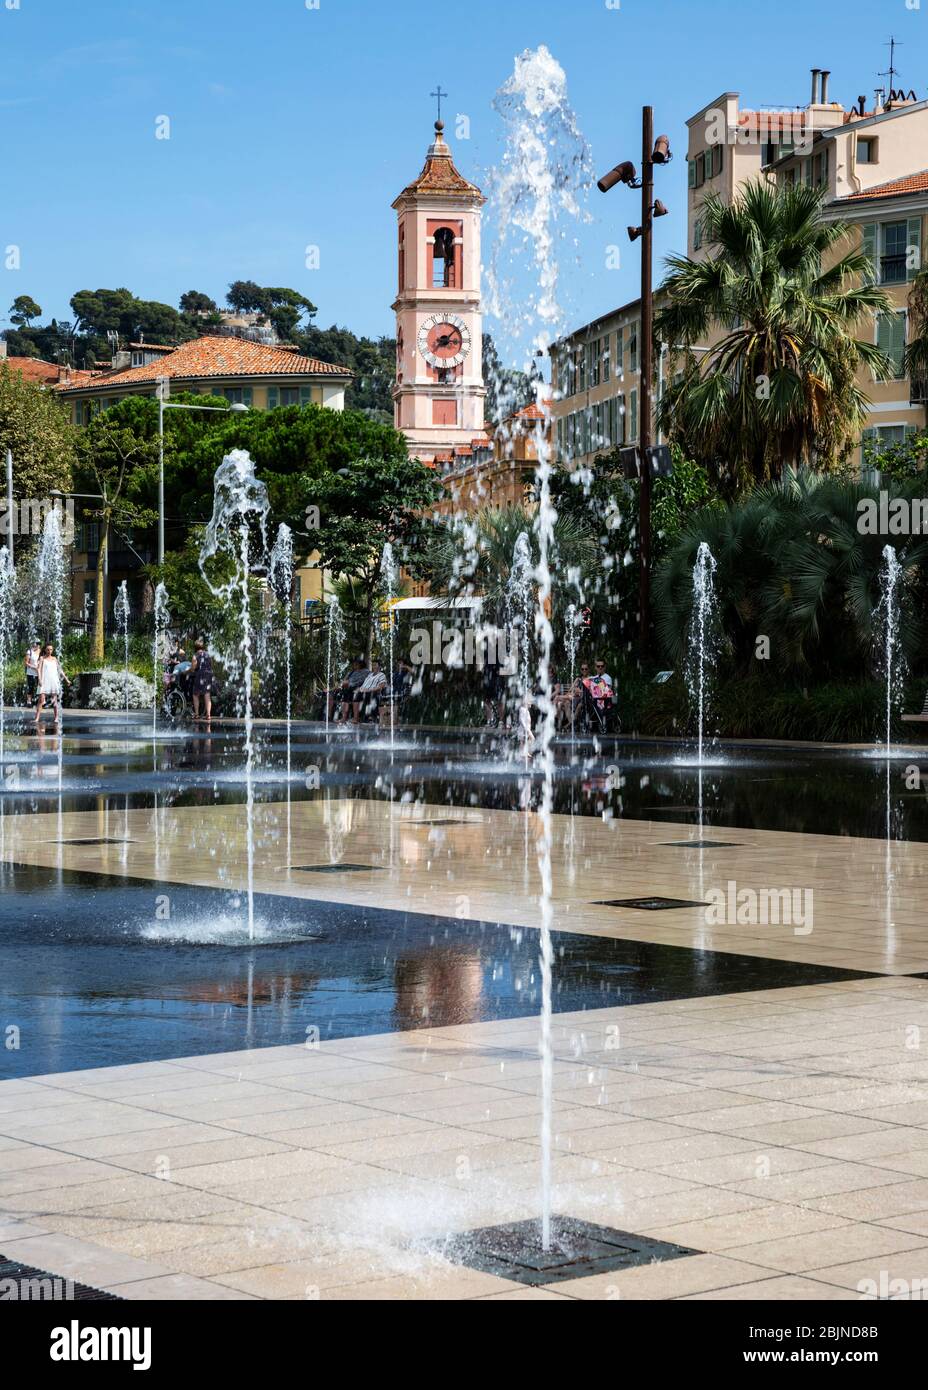 The Miroir d'Eau fountain, Park Paillon Promenade, Nice, Cote d'Azur, Provence, France. Stock Photo